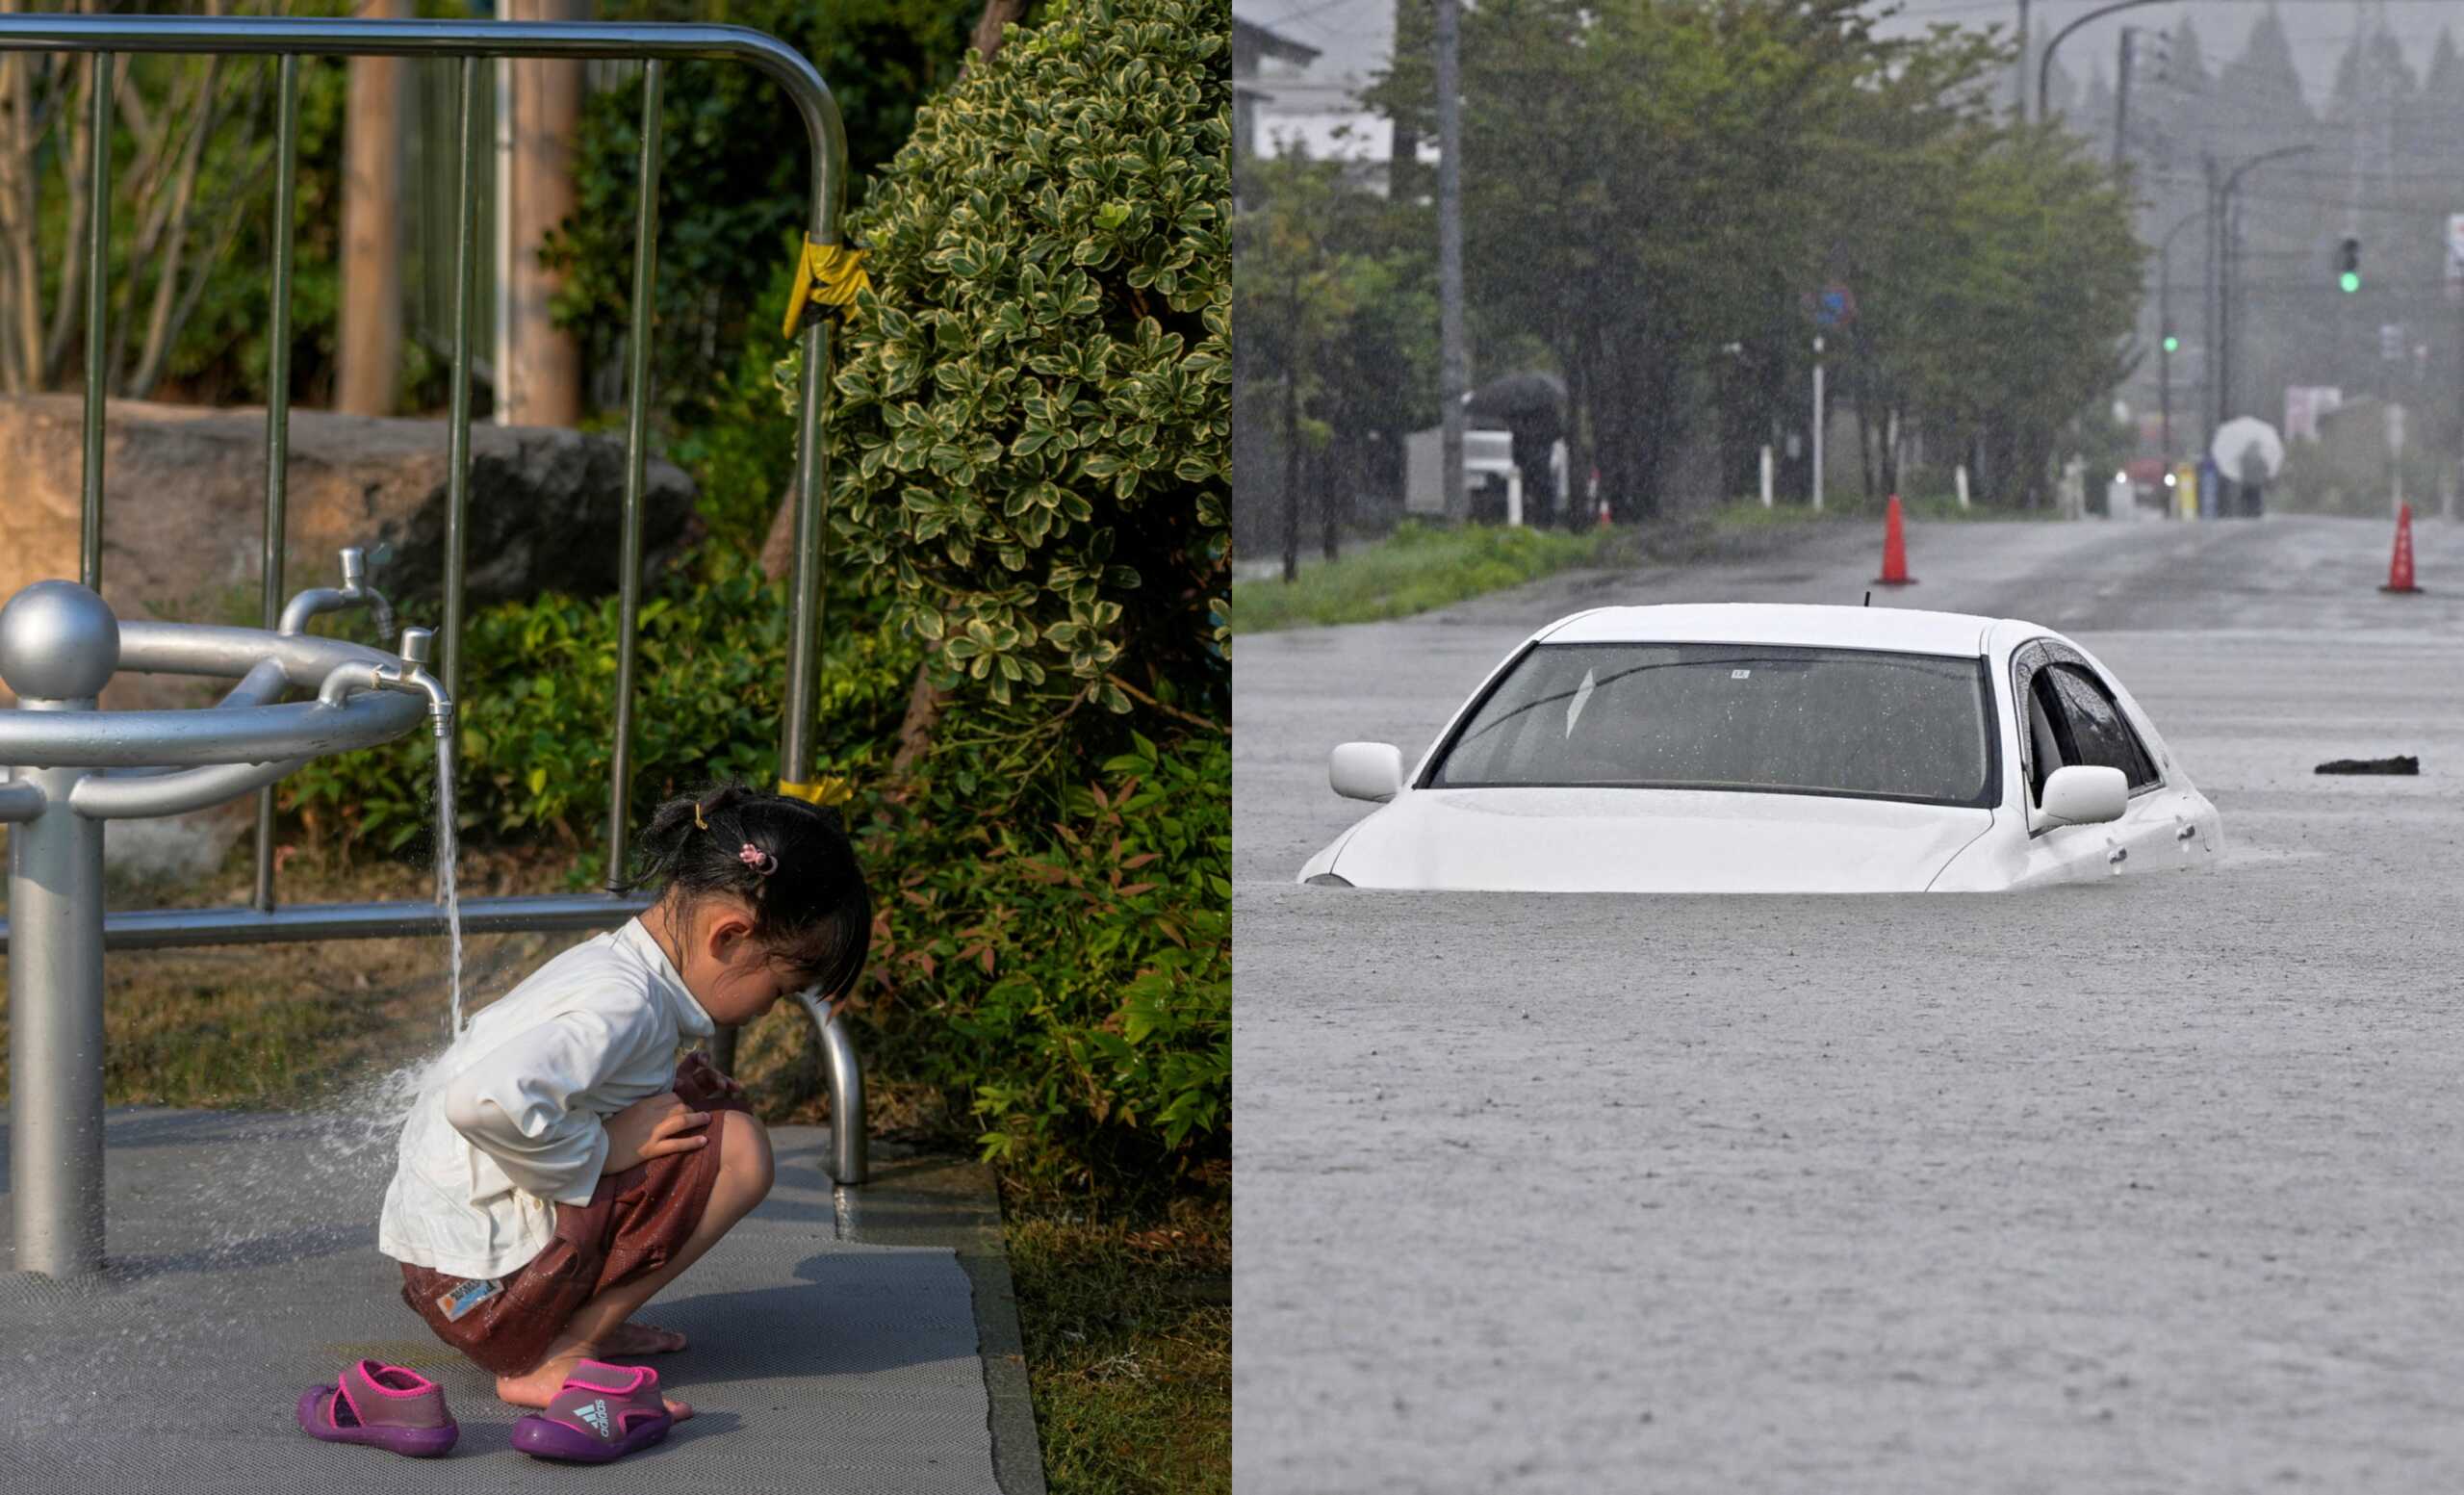 Ιαπωνία: Ο καιρός τρελάθηκε – Άλλες περιοχές πλήττονται από καύσωνα και άλλες από καταρρακτώδεις βροχές